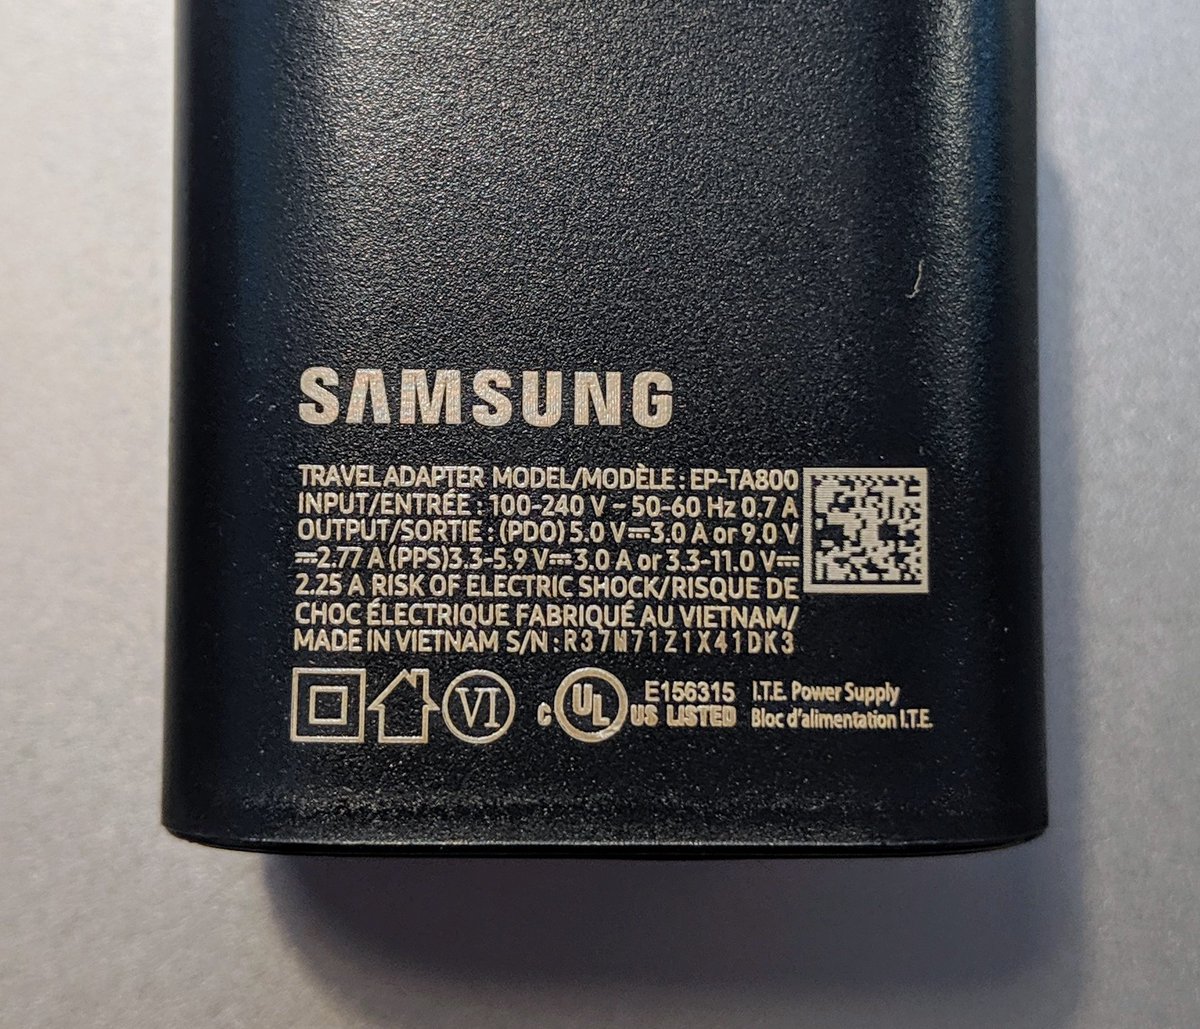 Giải mã công nghệ sạc
siêu nhanh 45W trên Samsung Galaxy Note 10+